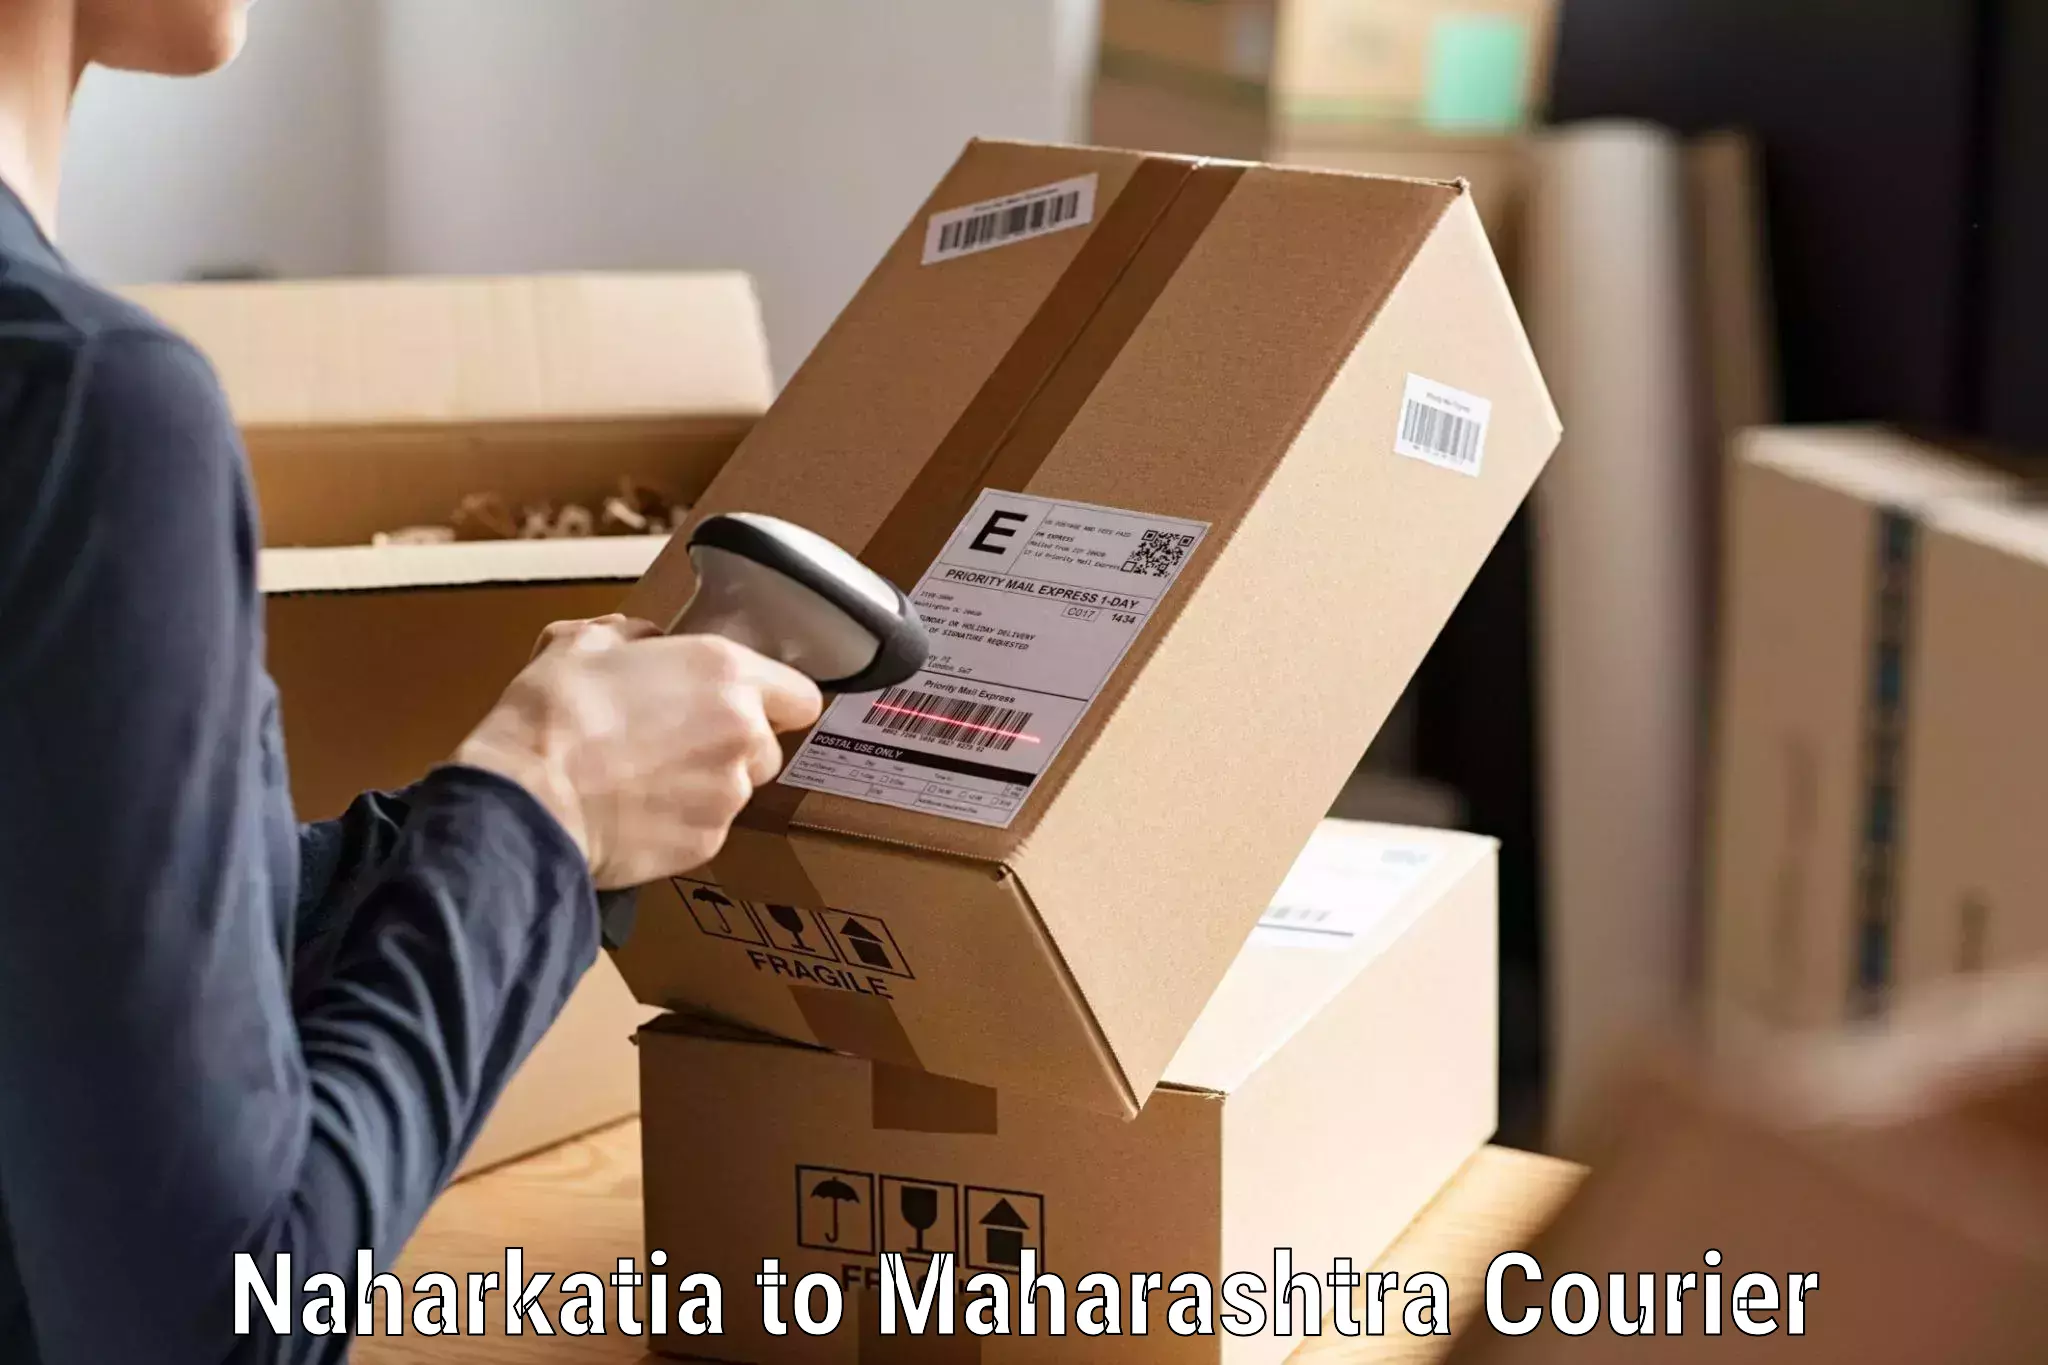 Efficient parcel service Naharkatia to Mahad